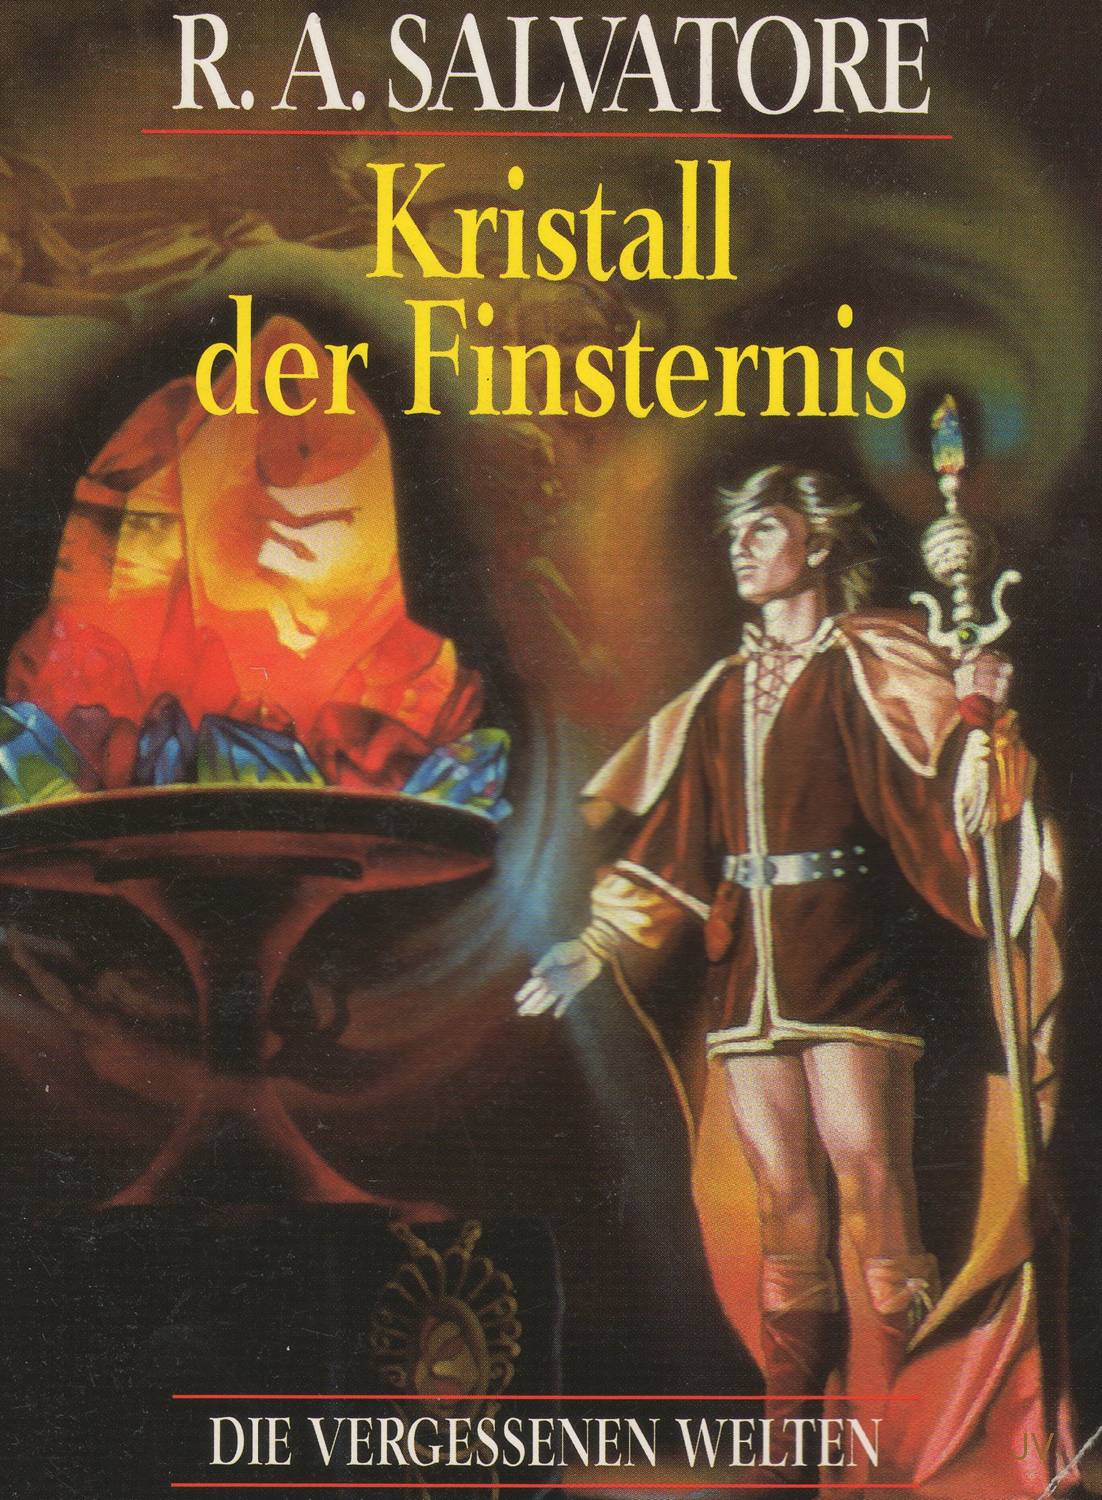 Cover zum Buch Kristall der Finsternis von R.A.Salvatore, elfter Teil der vergessene Reiche Saga